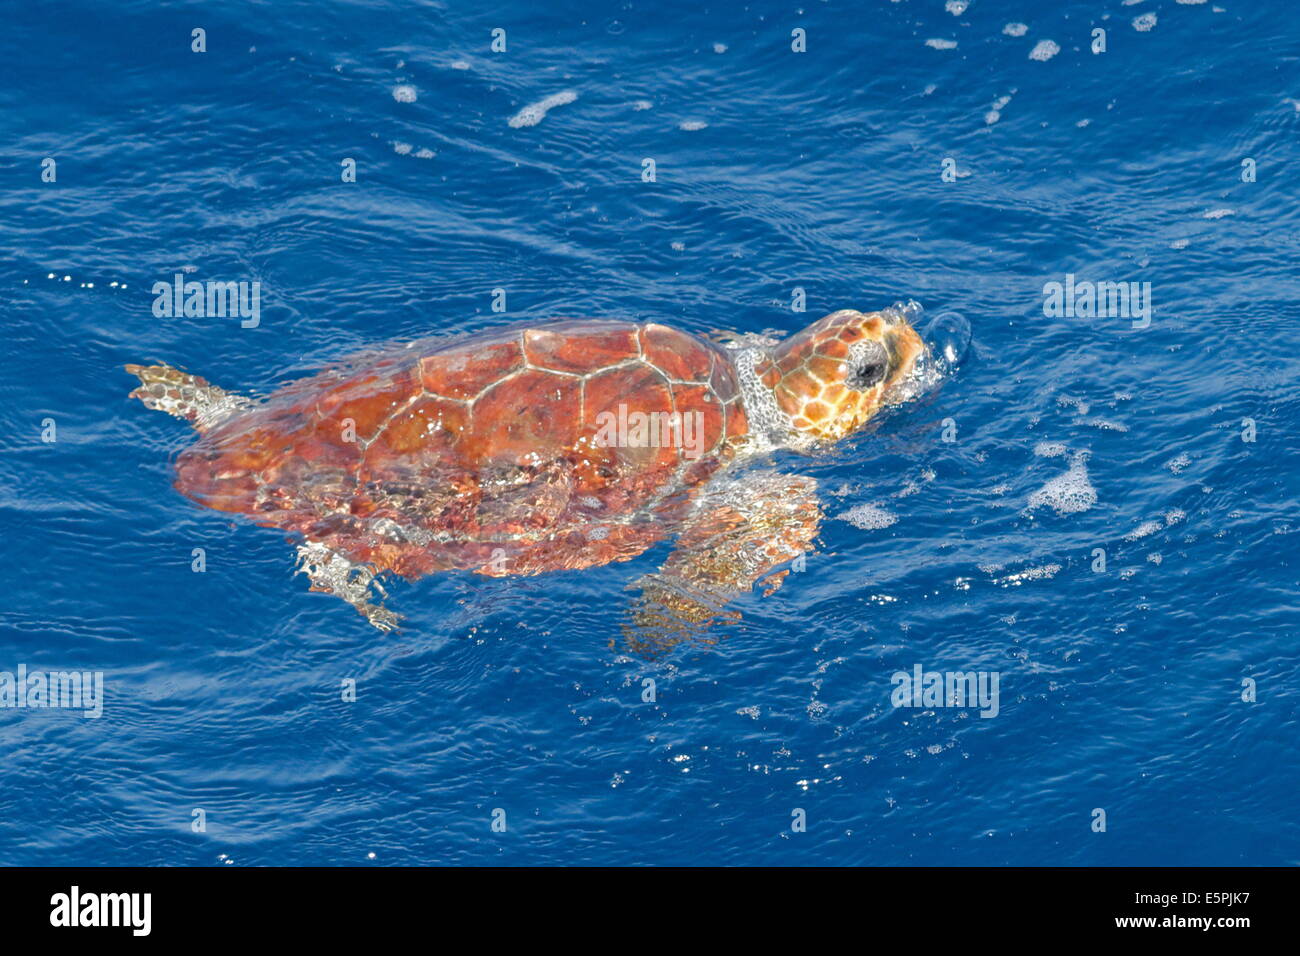 La tortue caouanne (Caretta caretta), étape océanique, la respiration à la surface, de l'Atlantique nord-est, le Maroc à l'étranger Banque D'Images